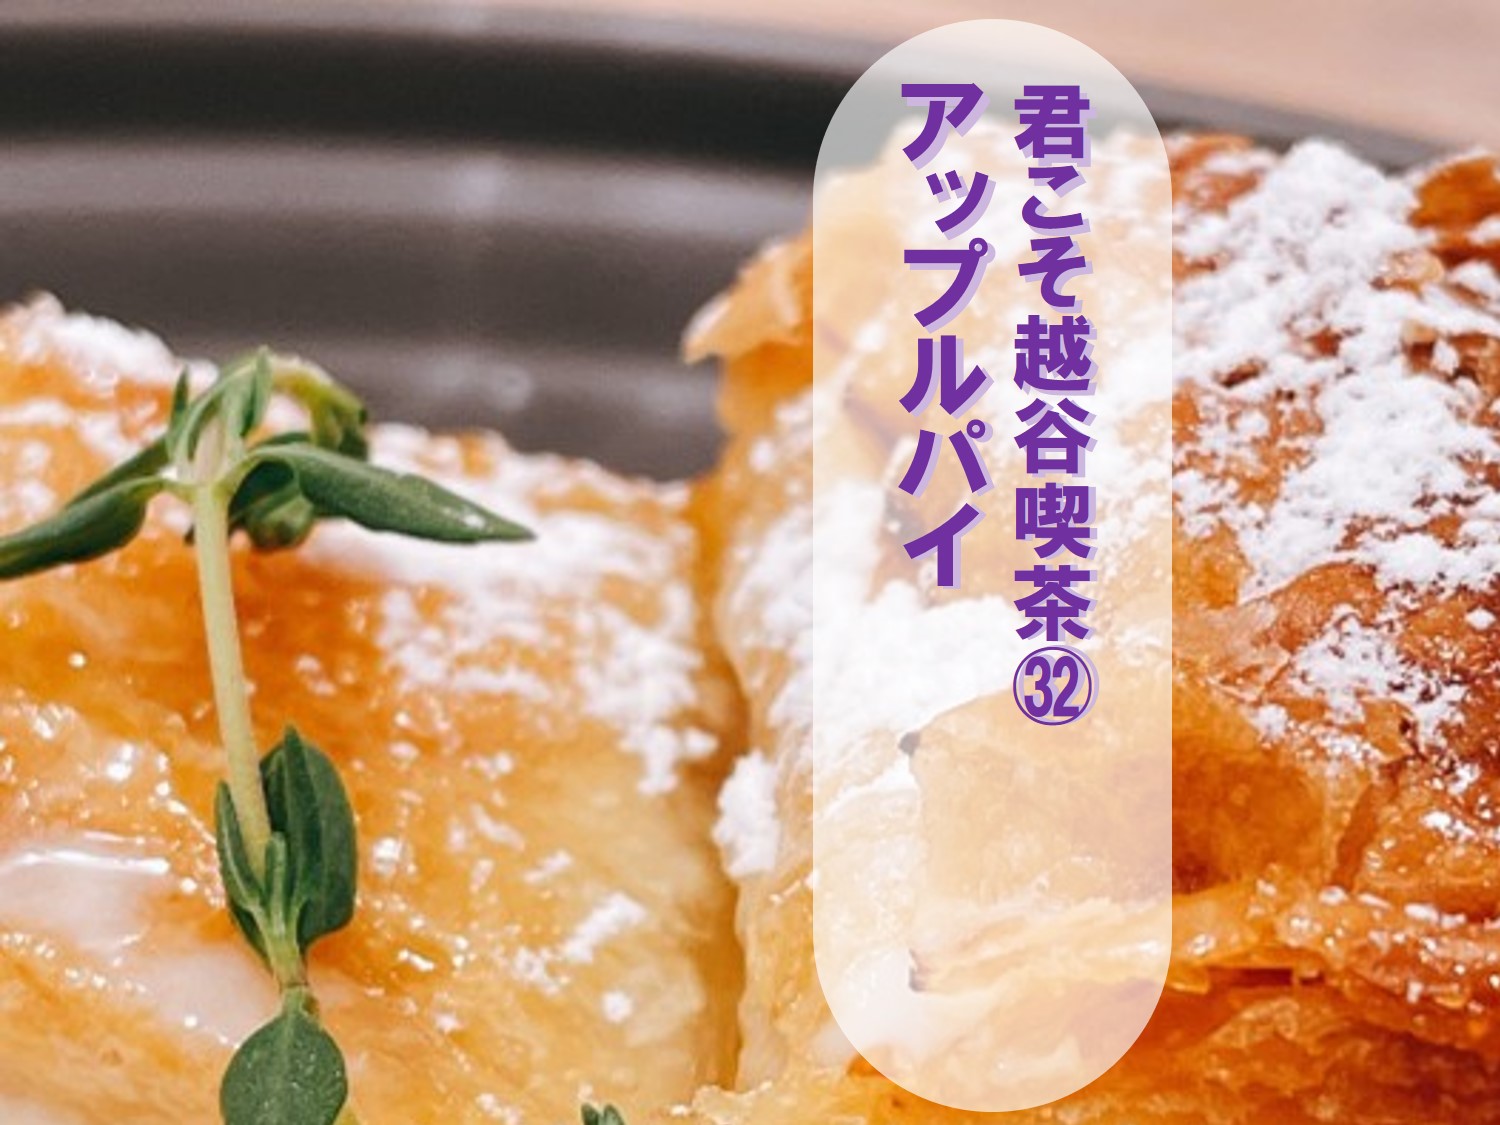 アップルパイをCafe&Dining ARISTAR越谷店で【君こそ越谷喫茶㉜】